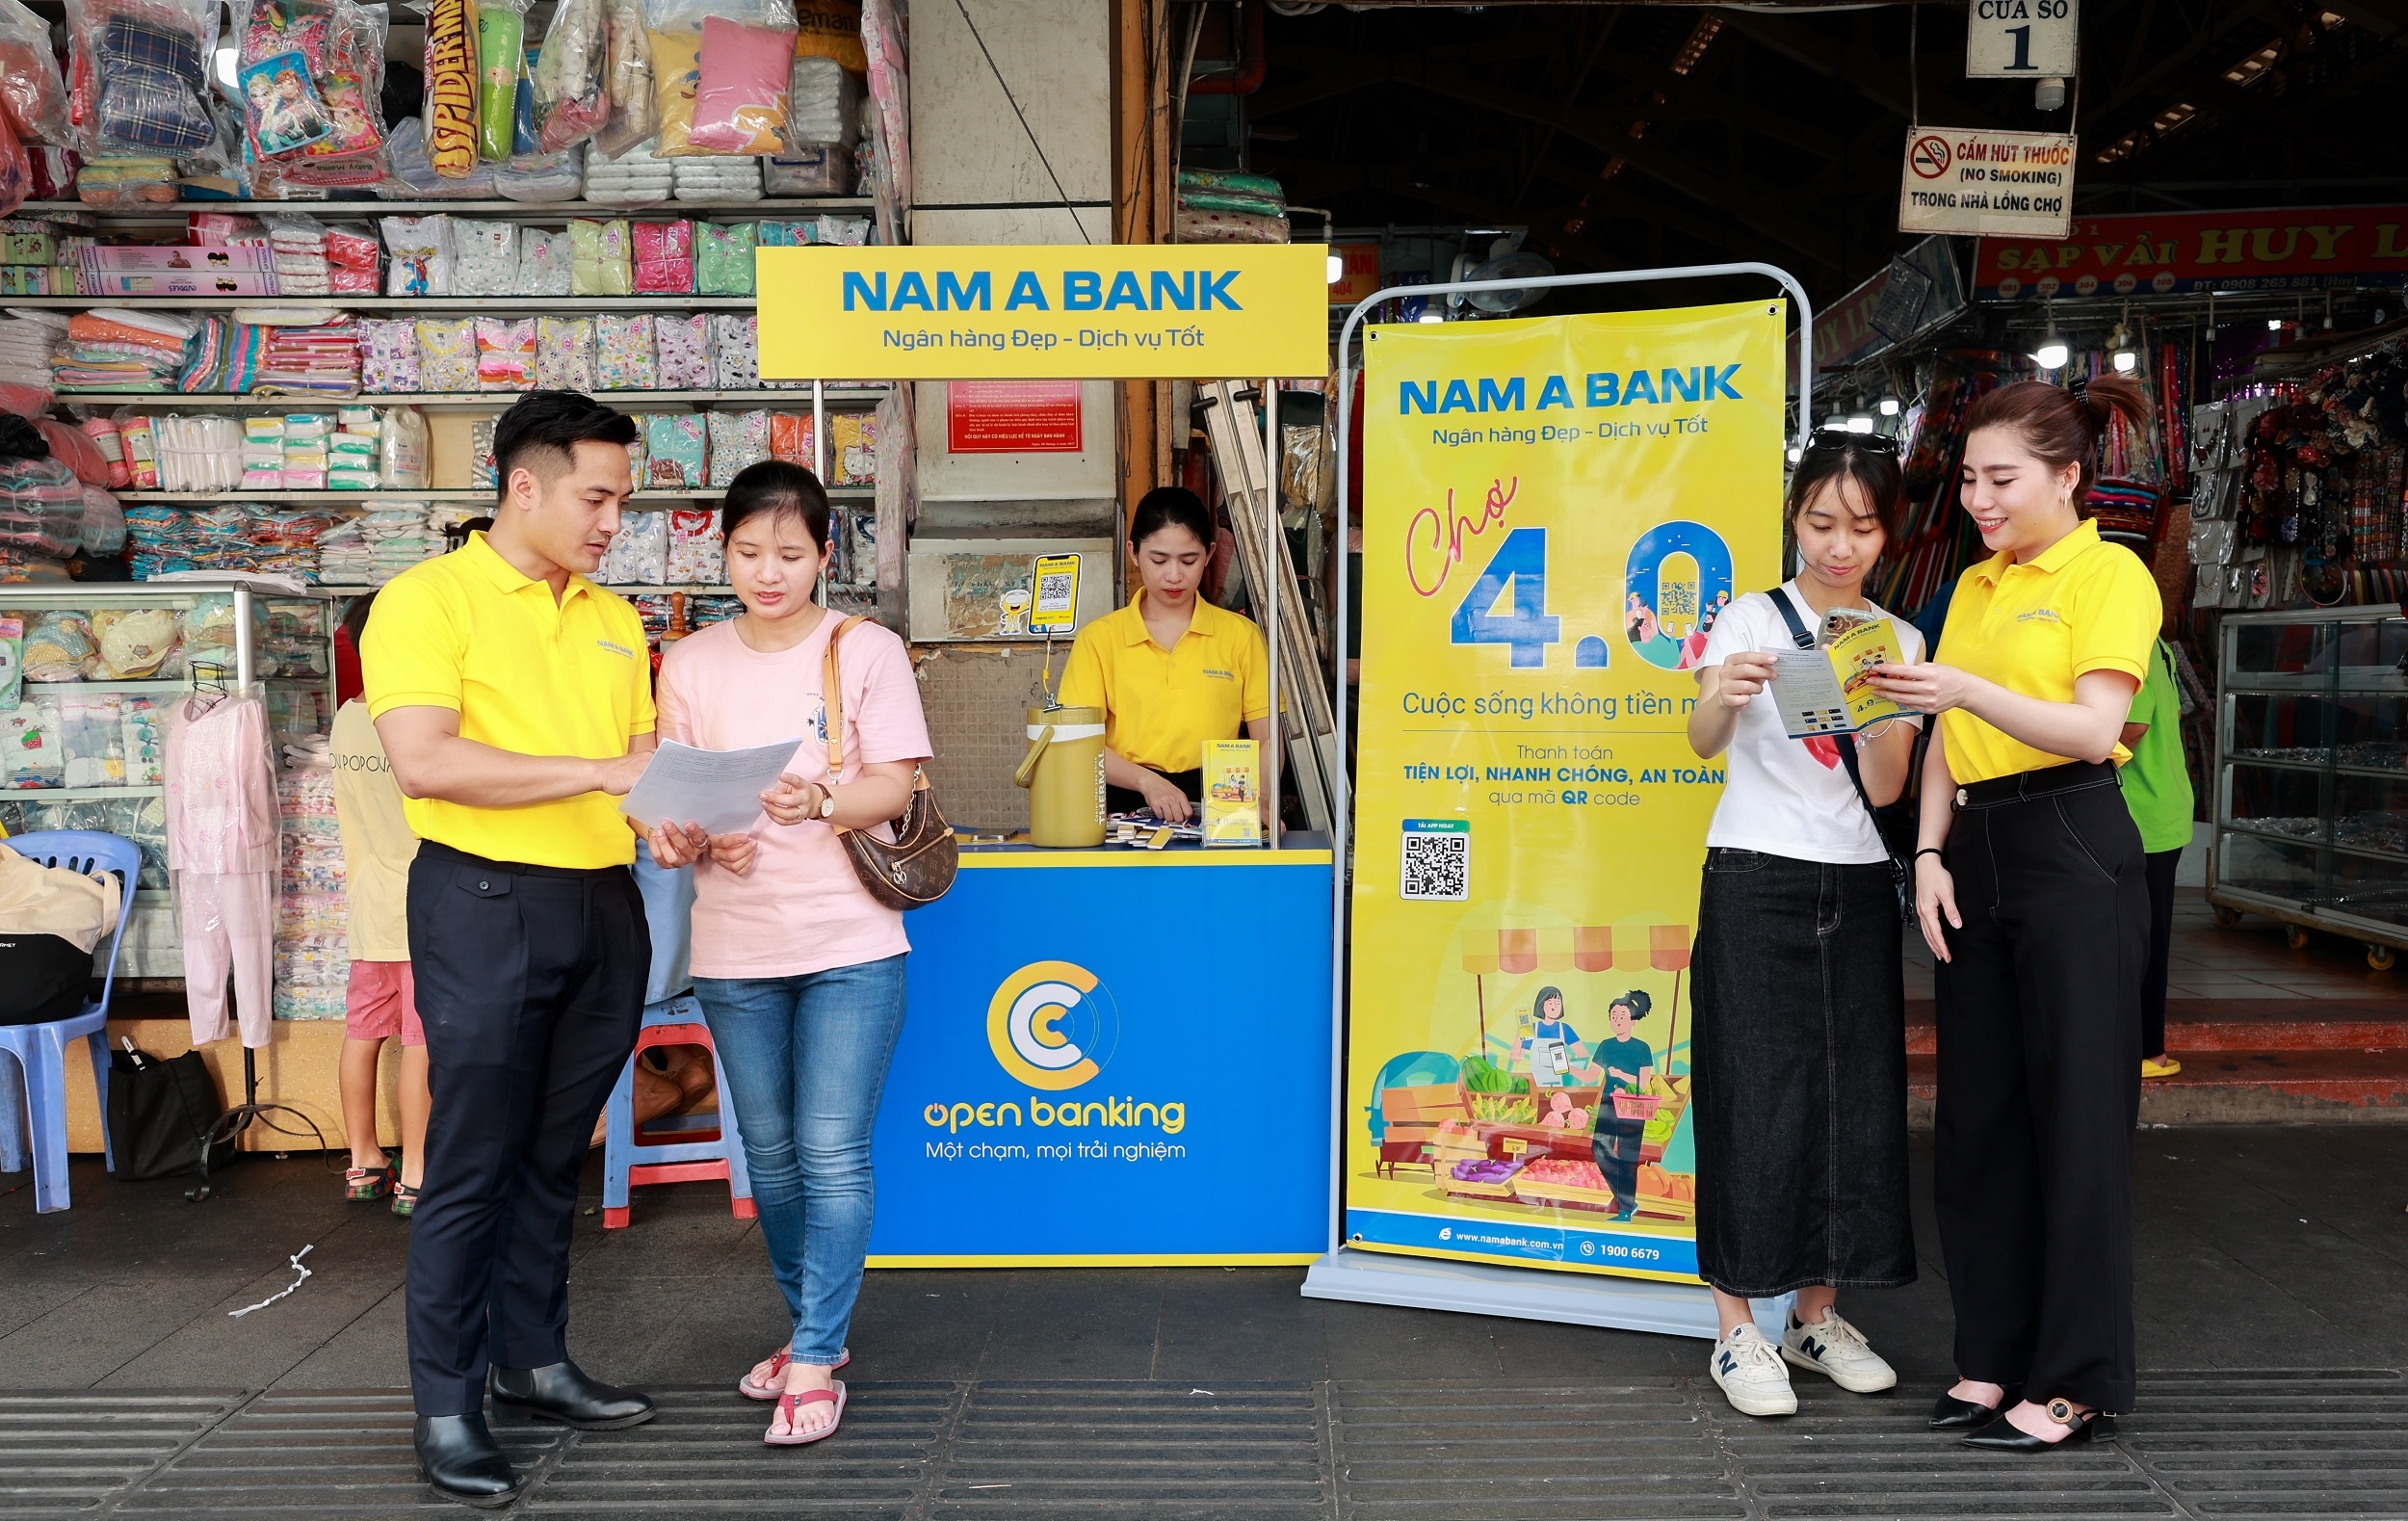 Nam A Bank triển khai chương trình “Chợ 4.0 – Cuộc sống không tiền mặt” phủ sóng tại các chợ trên địa bàn TP HCM.